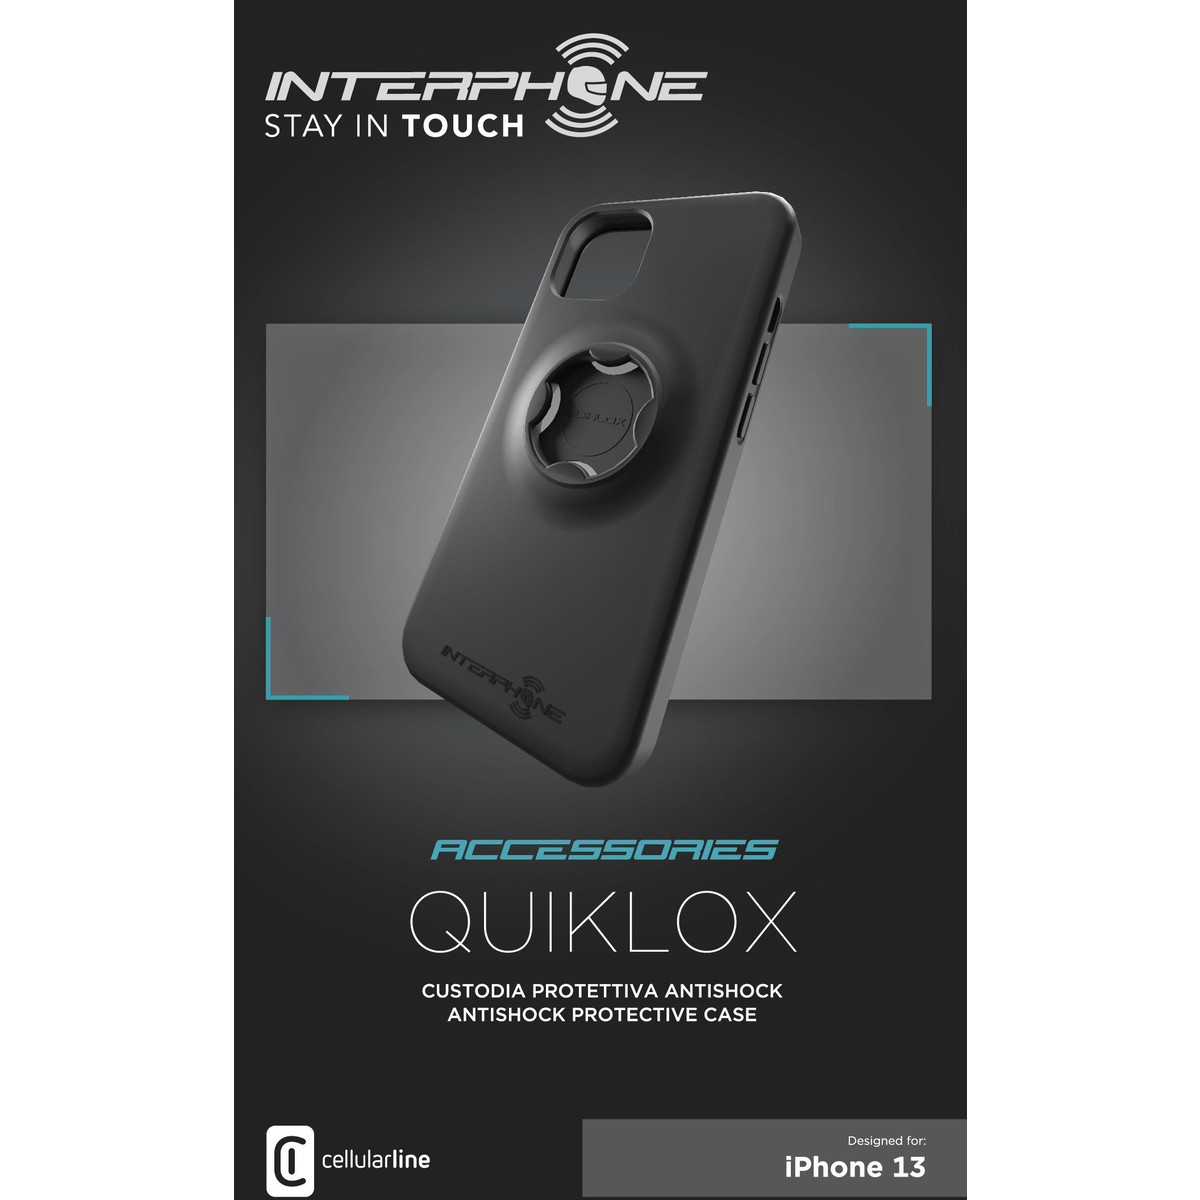 Interphone-Quiklox Schockschutzhülle IPhone 13